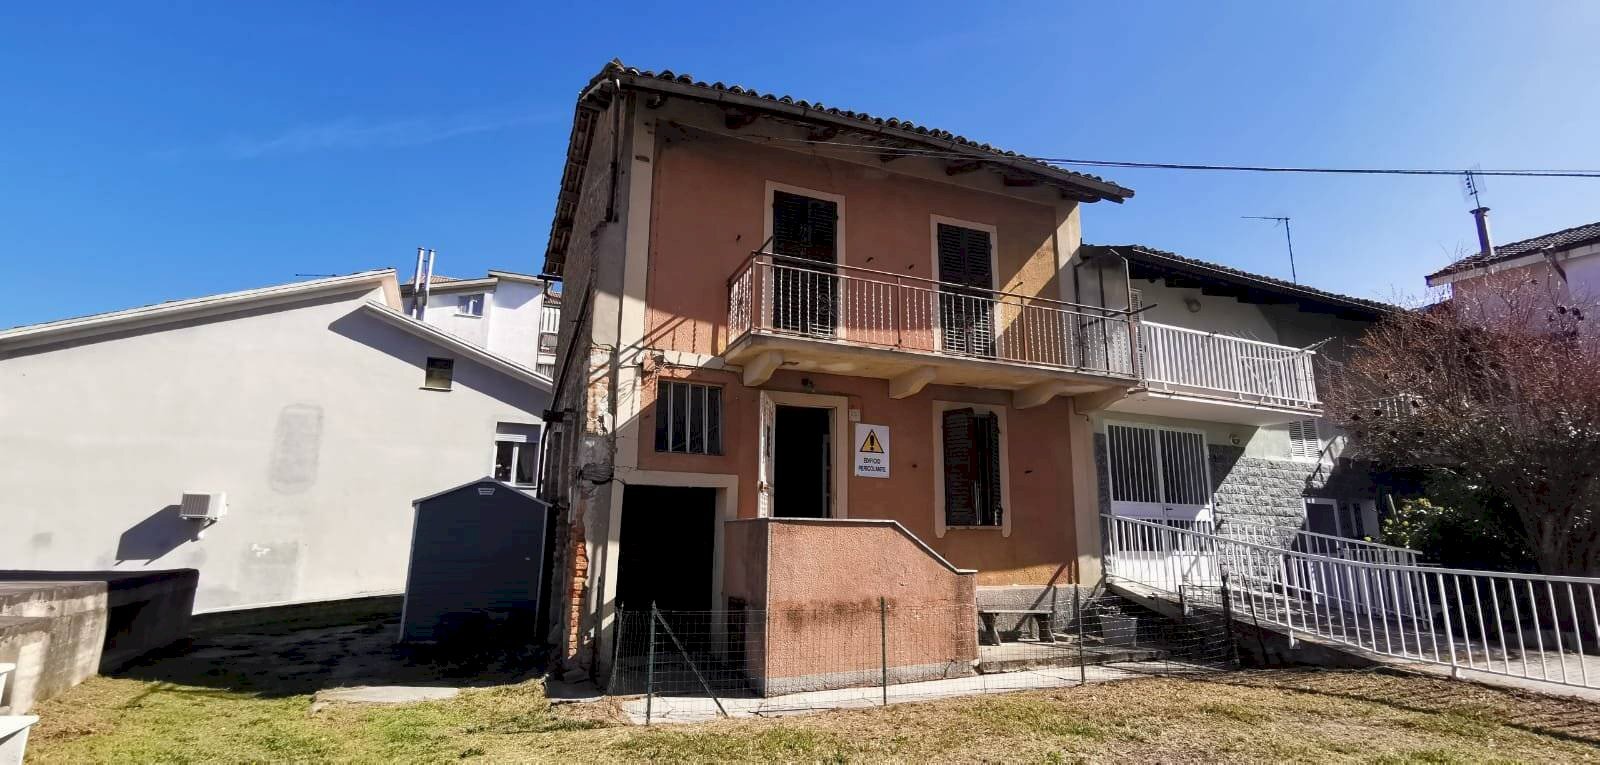 Rustico / Casale in vendita a Agliano Terme, 1 locali, prezzo € 29.000 | CambioCasa.it